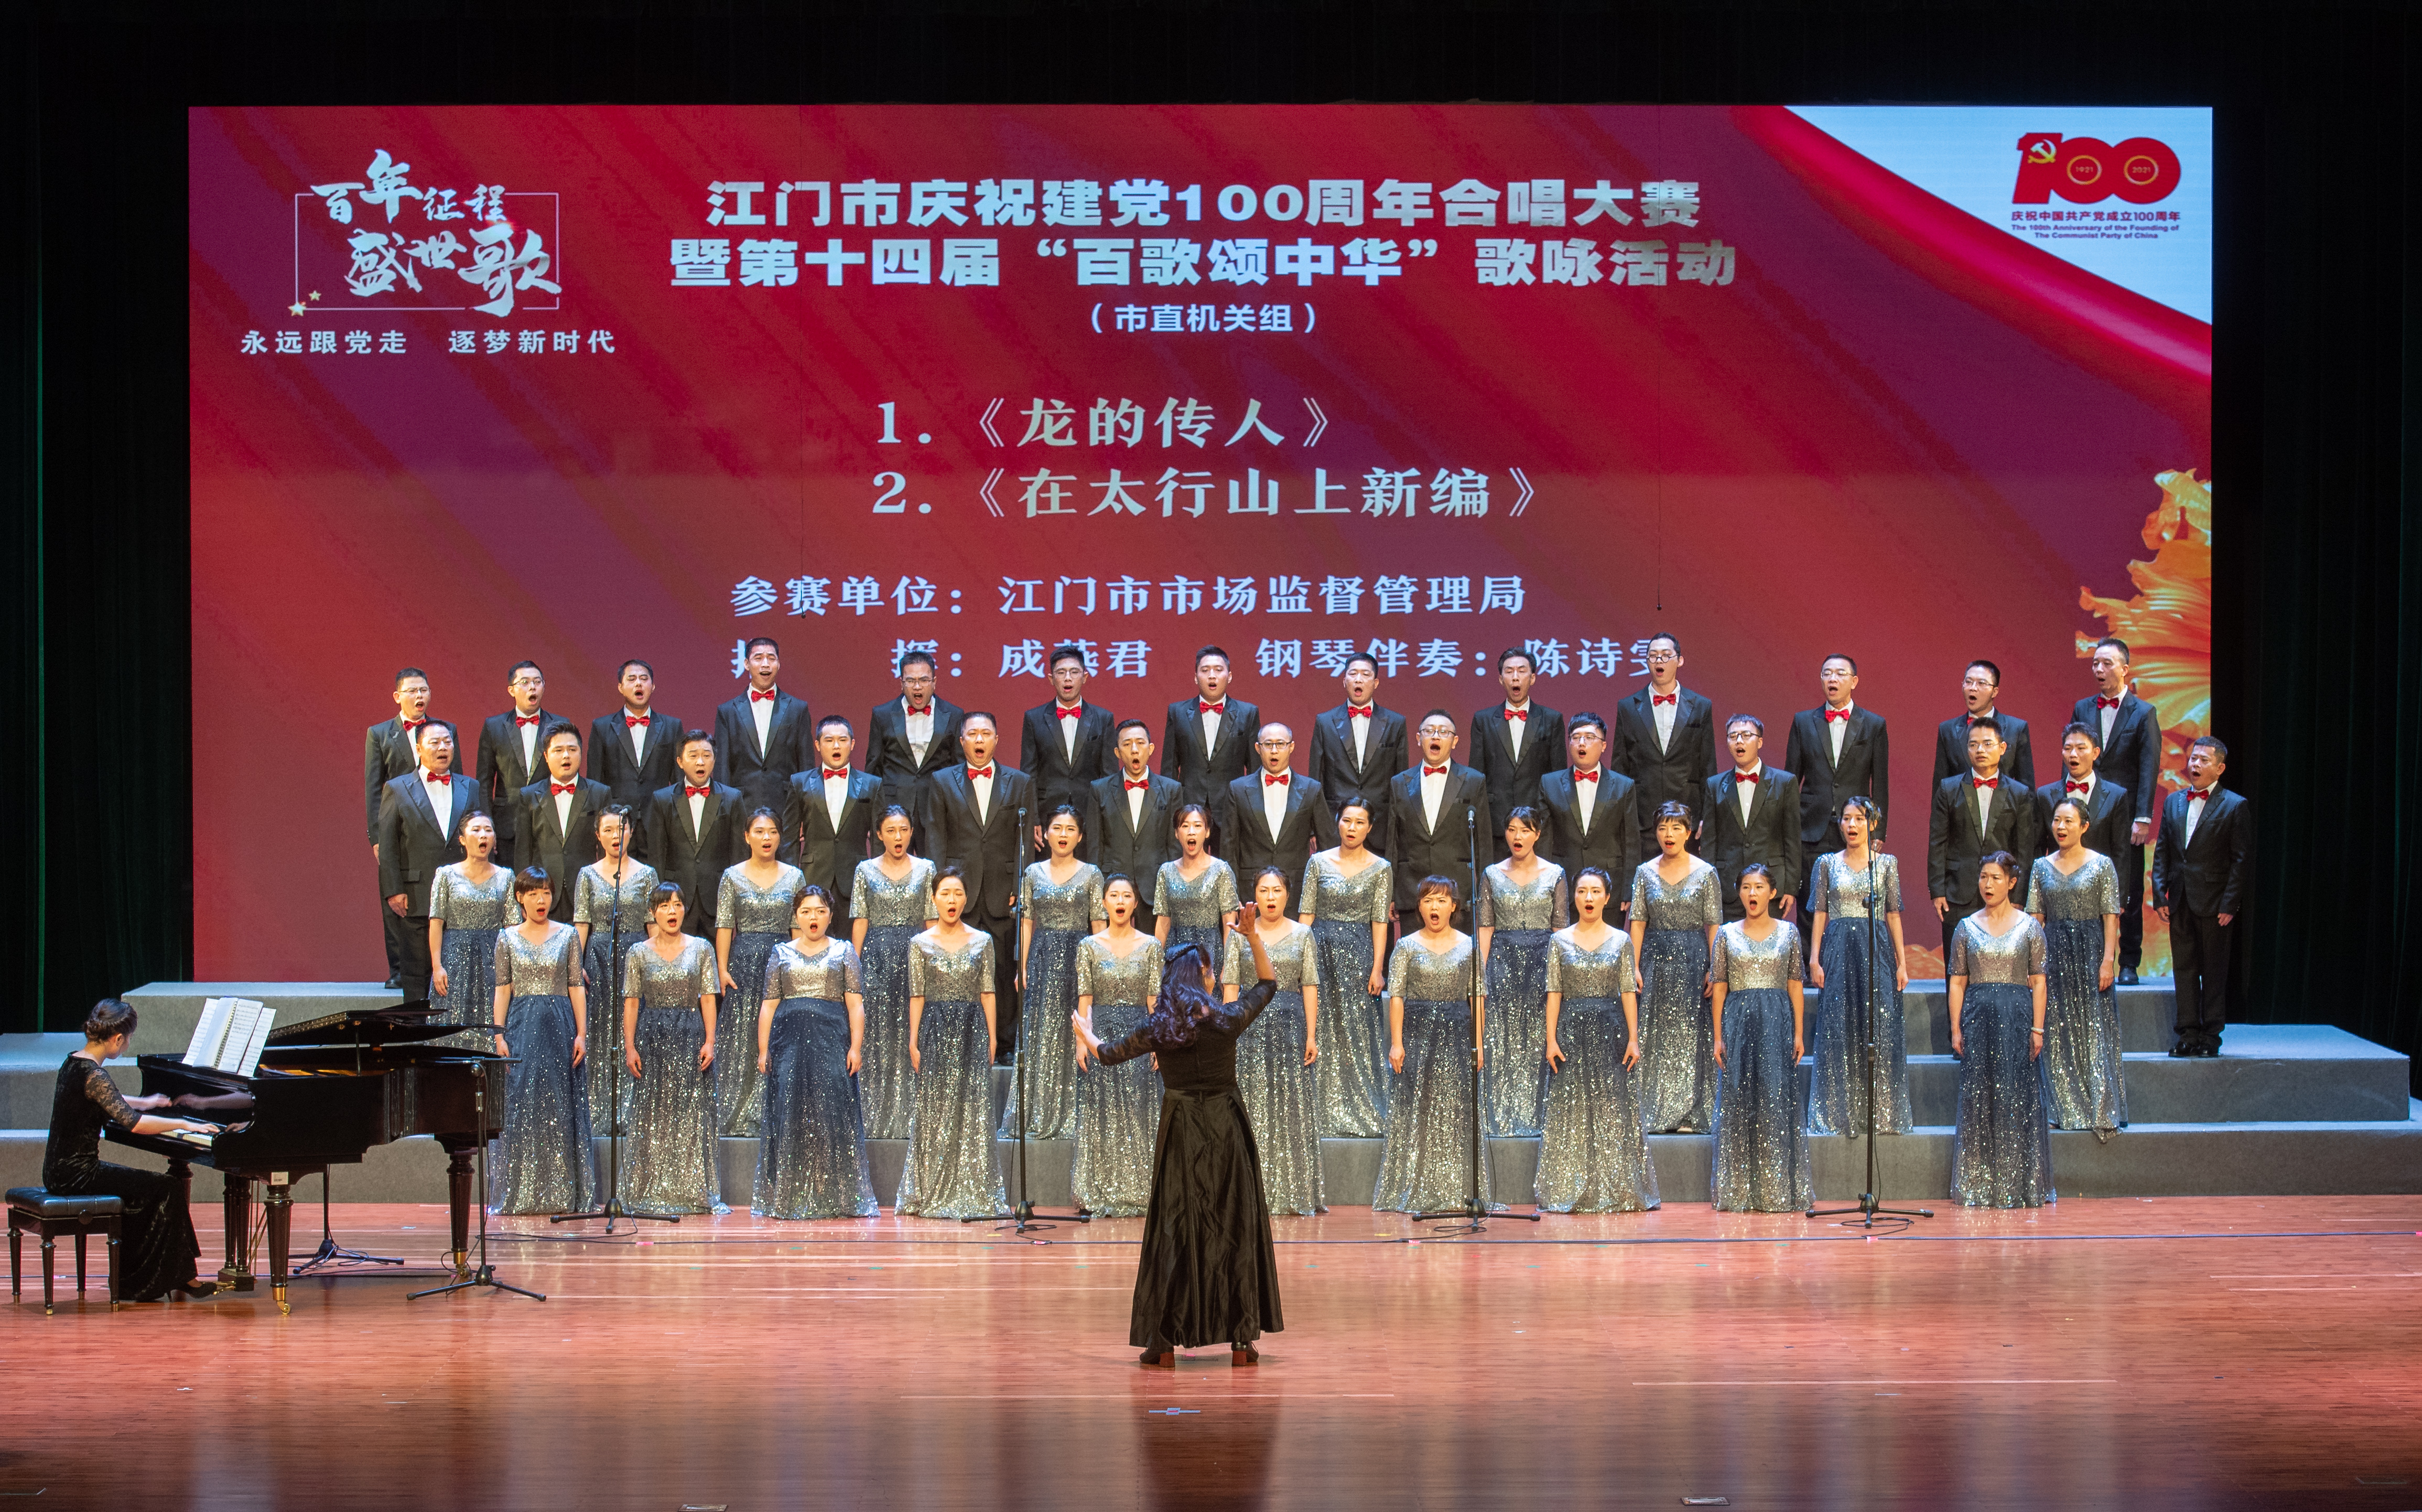 江门庆祝建党100周年合唱比赛(市直机关组)完美收官